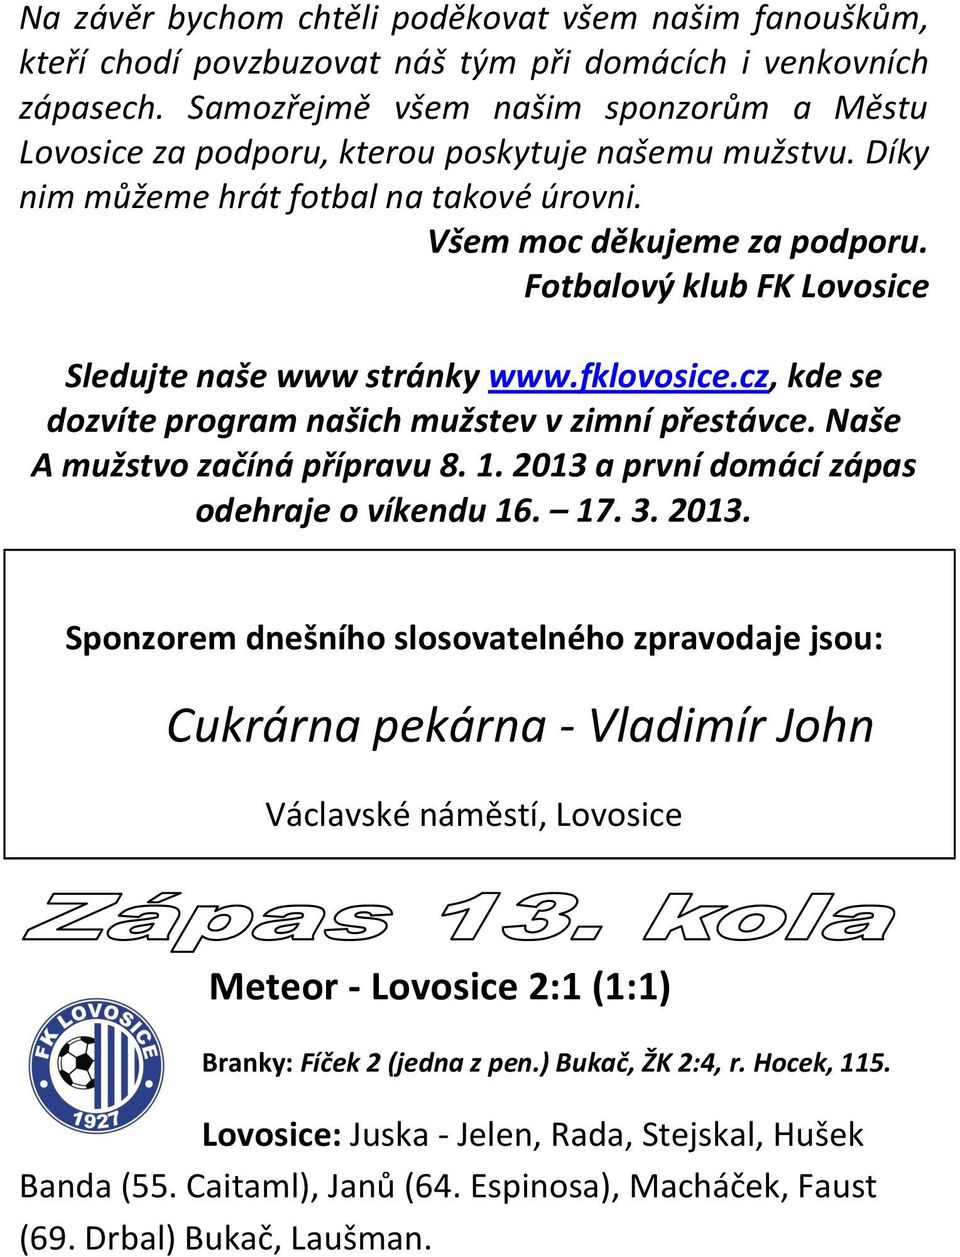 Fotbalový klub FK Lovosice Sledujte naše www stránky www.fklovosice.cz, kde se dozvíte program našich mužstev v zimní přestávce. Naše A mužstvo začíná přípravu 8. 1.